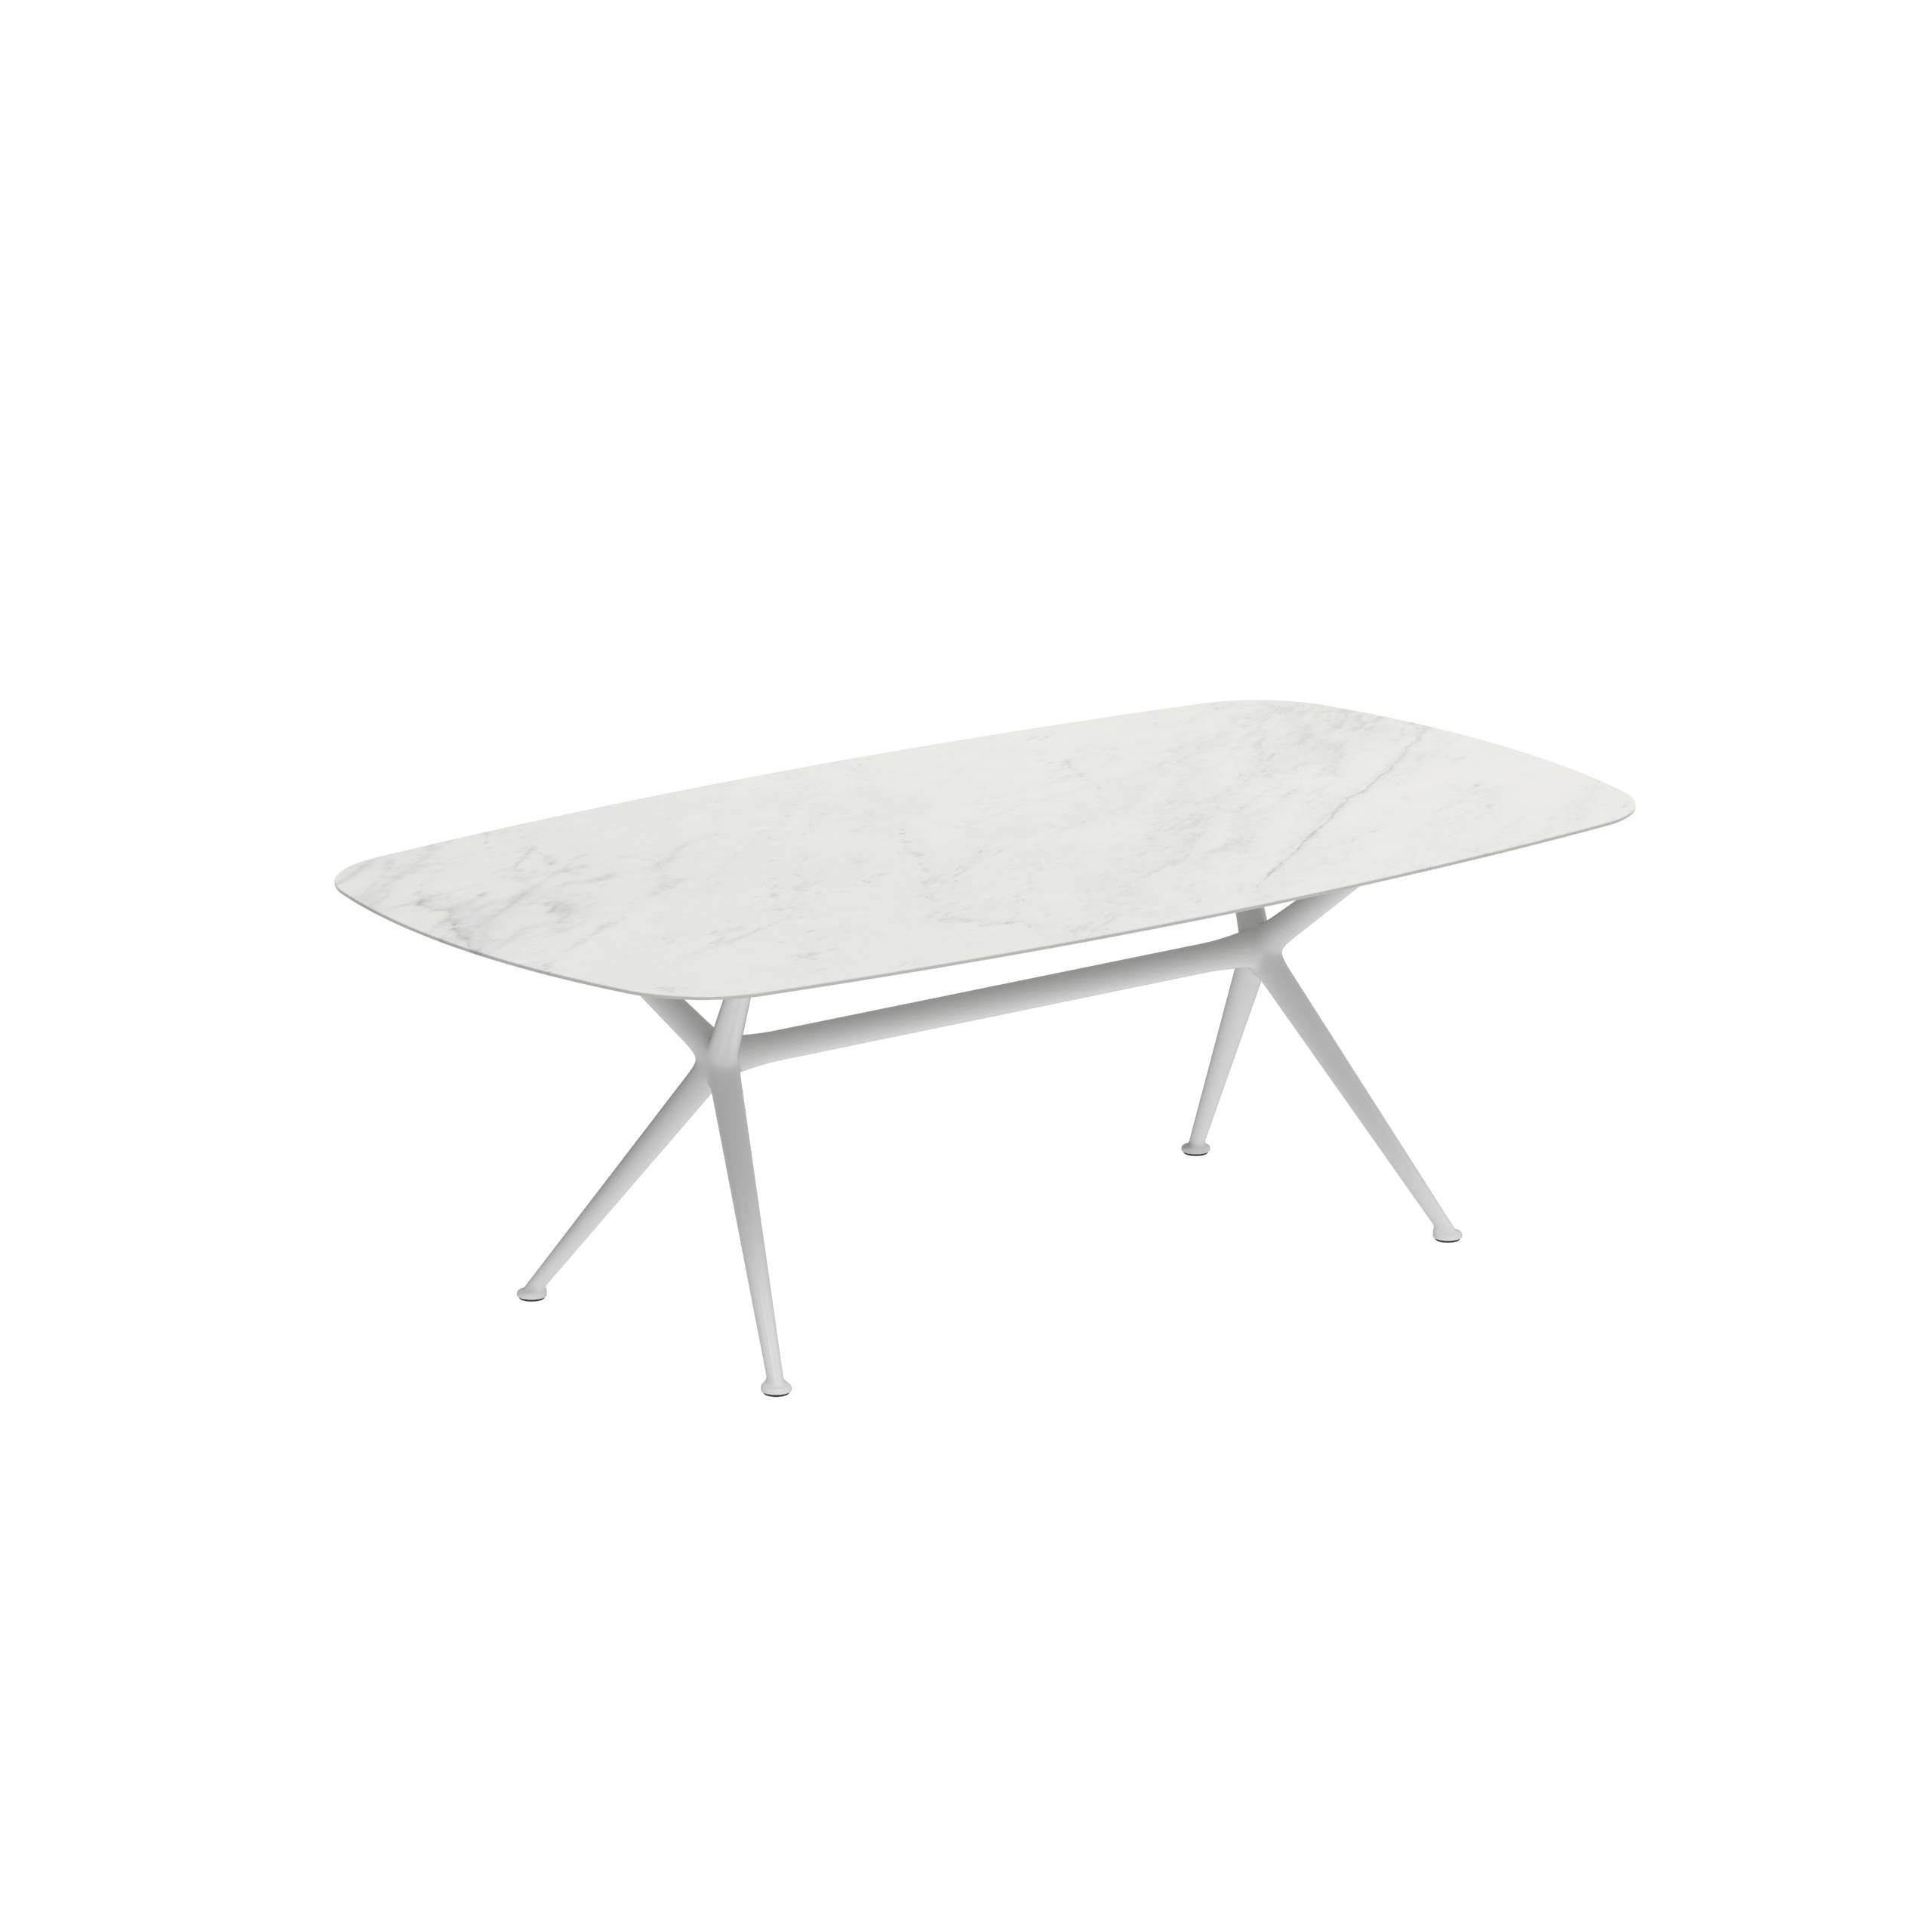 Exes Table 220x120cm Alu Legs White - Table Top Ceramic Bianco Statuario